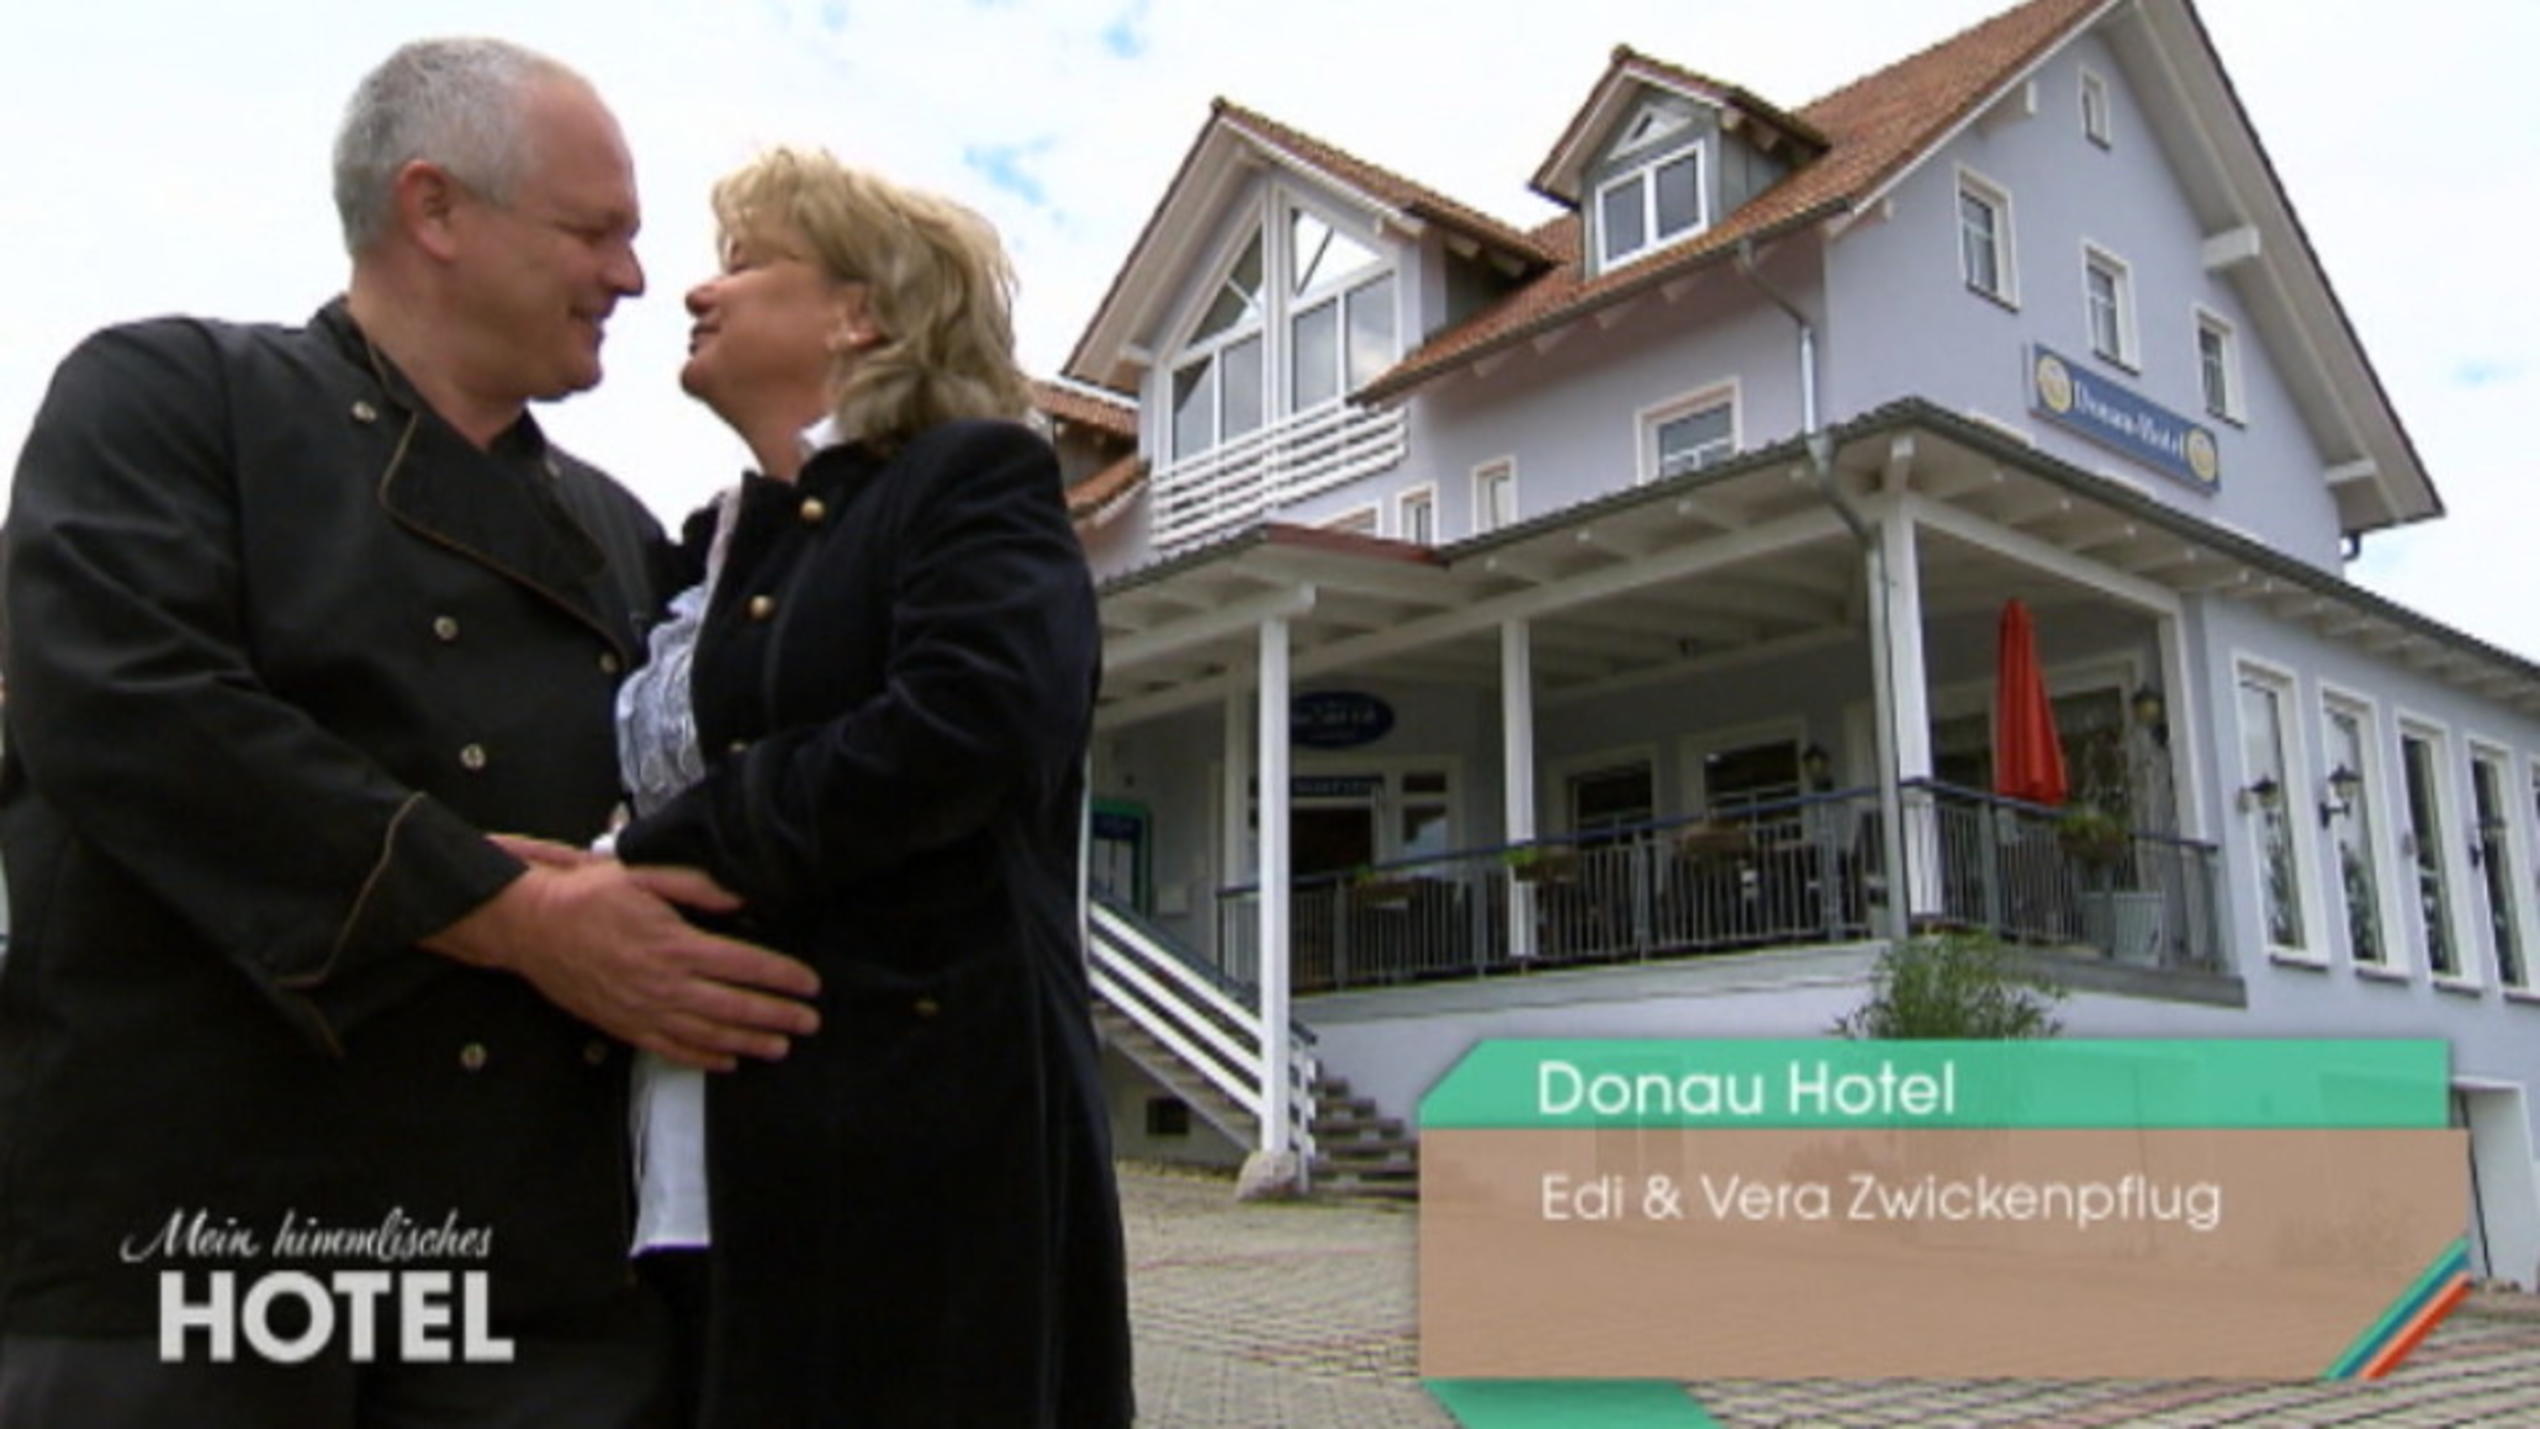 Vera und Edi posieren ganz verliebt vor ihrem "Donau Hotel".